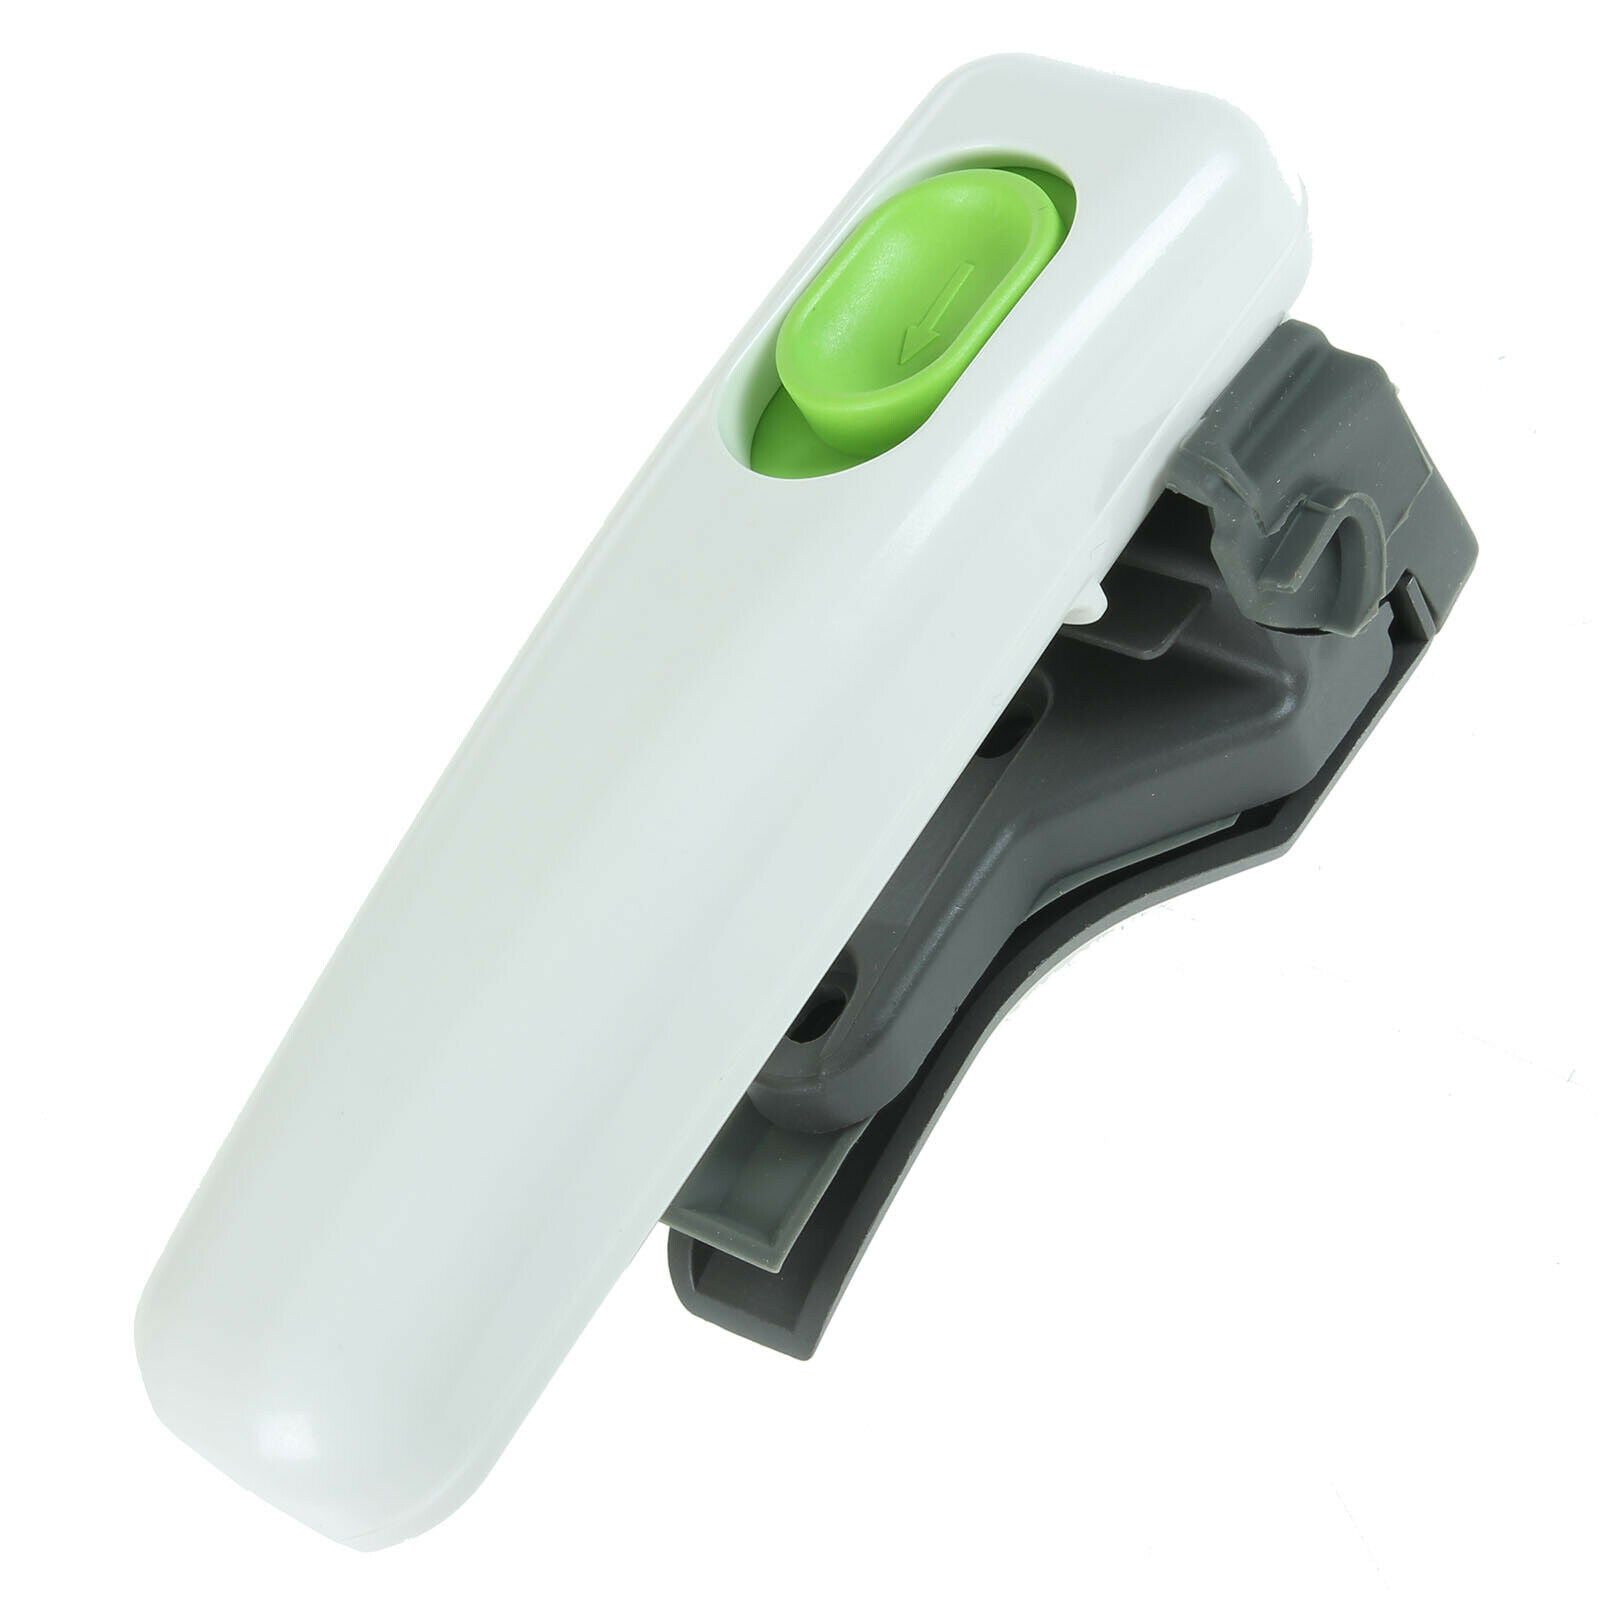 Tefal Actifry Family Fryer Handle with Screws AH9000 AH900015 SEB White Green